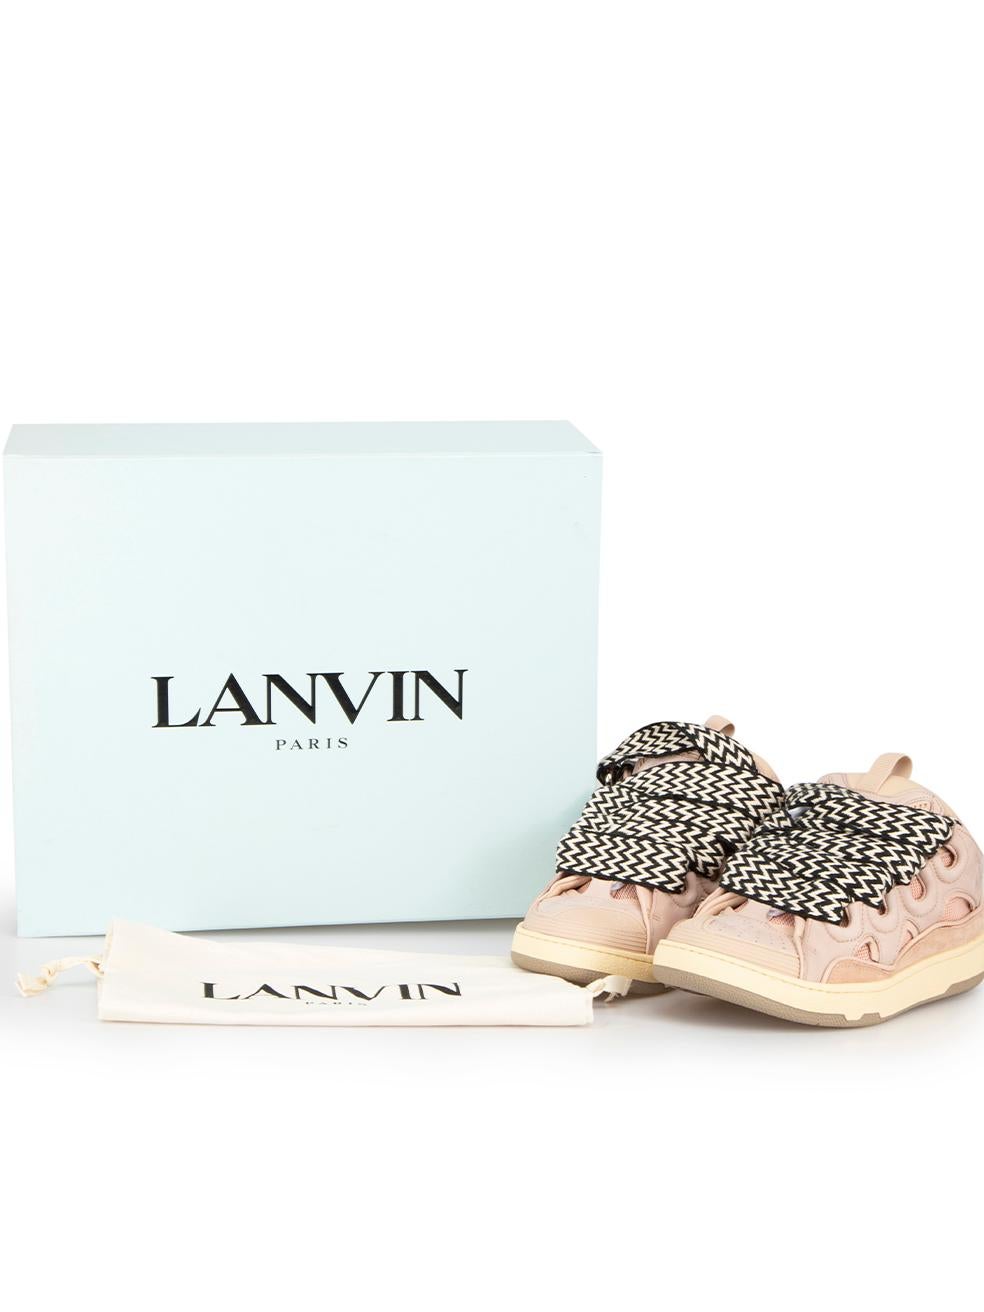 Lanvin Paris Pink Leather Curb Sneakers Size EU 39 2